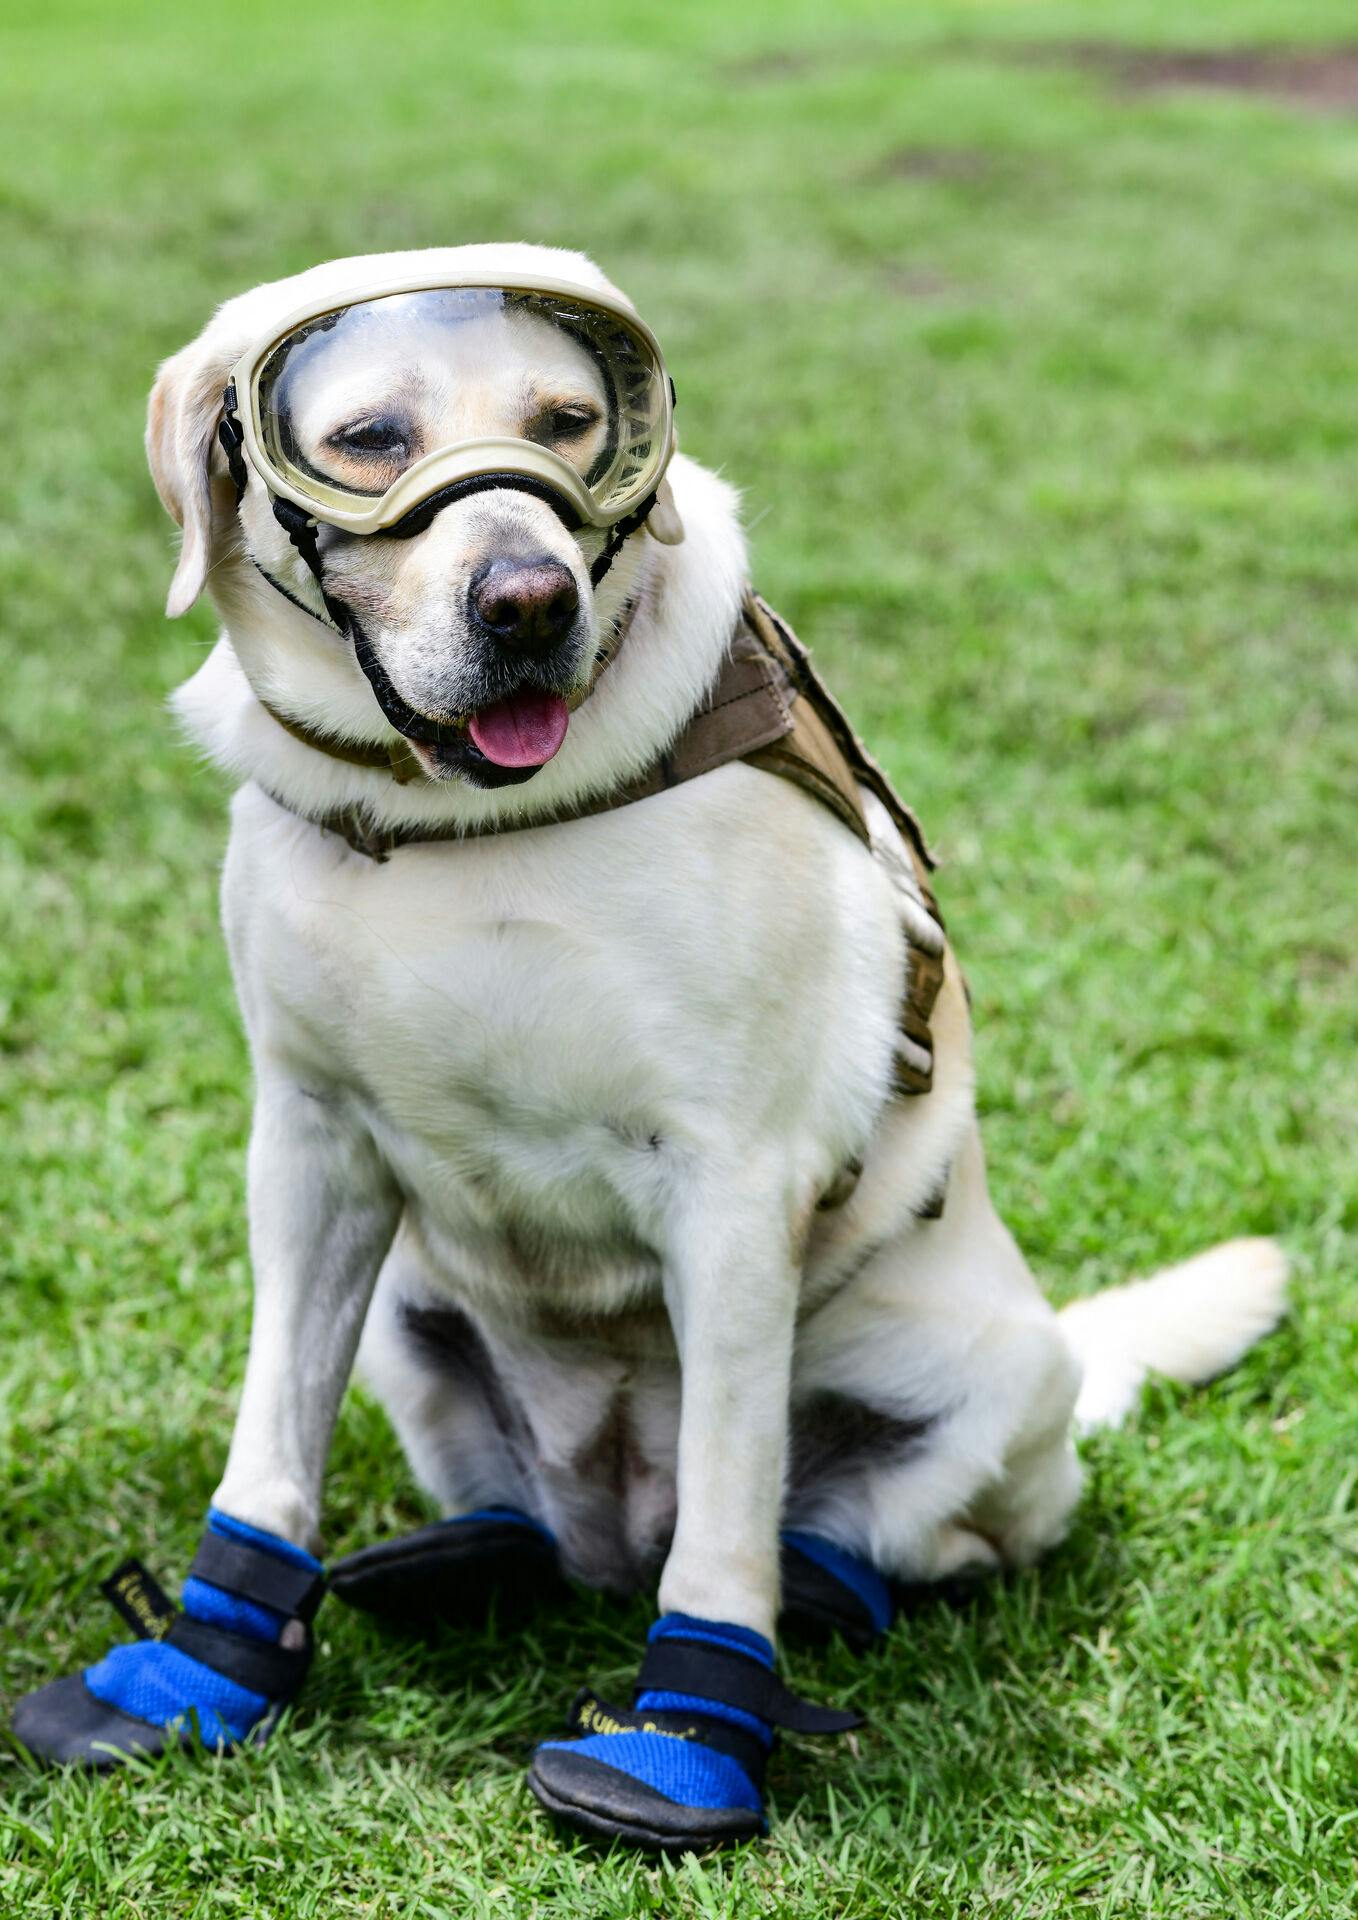 Selv iført beskyttelsesbriller og sikkerhedssko ser labradoren sød ud. Den er da også danskernes favorithund.&nbsp;
